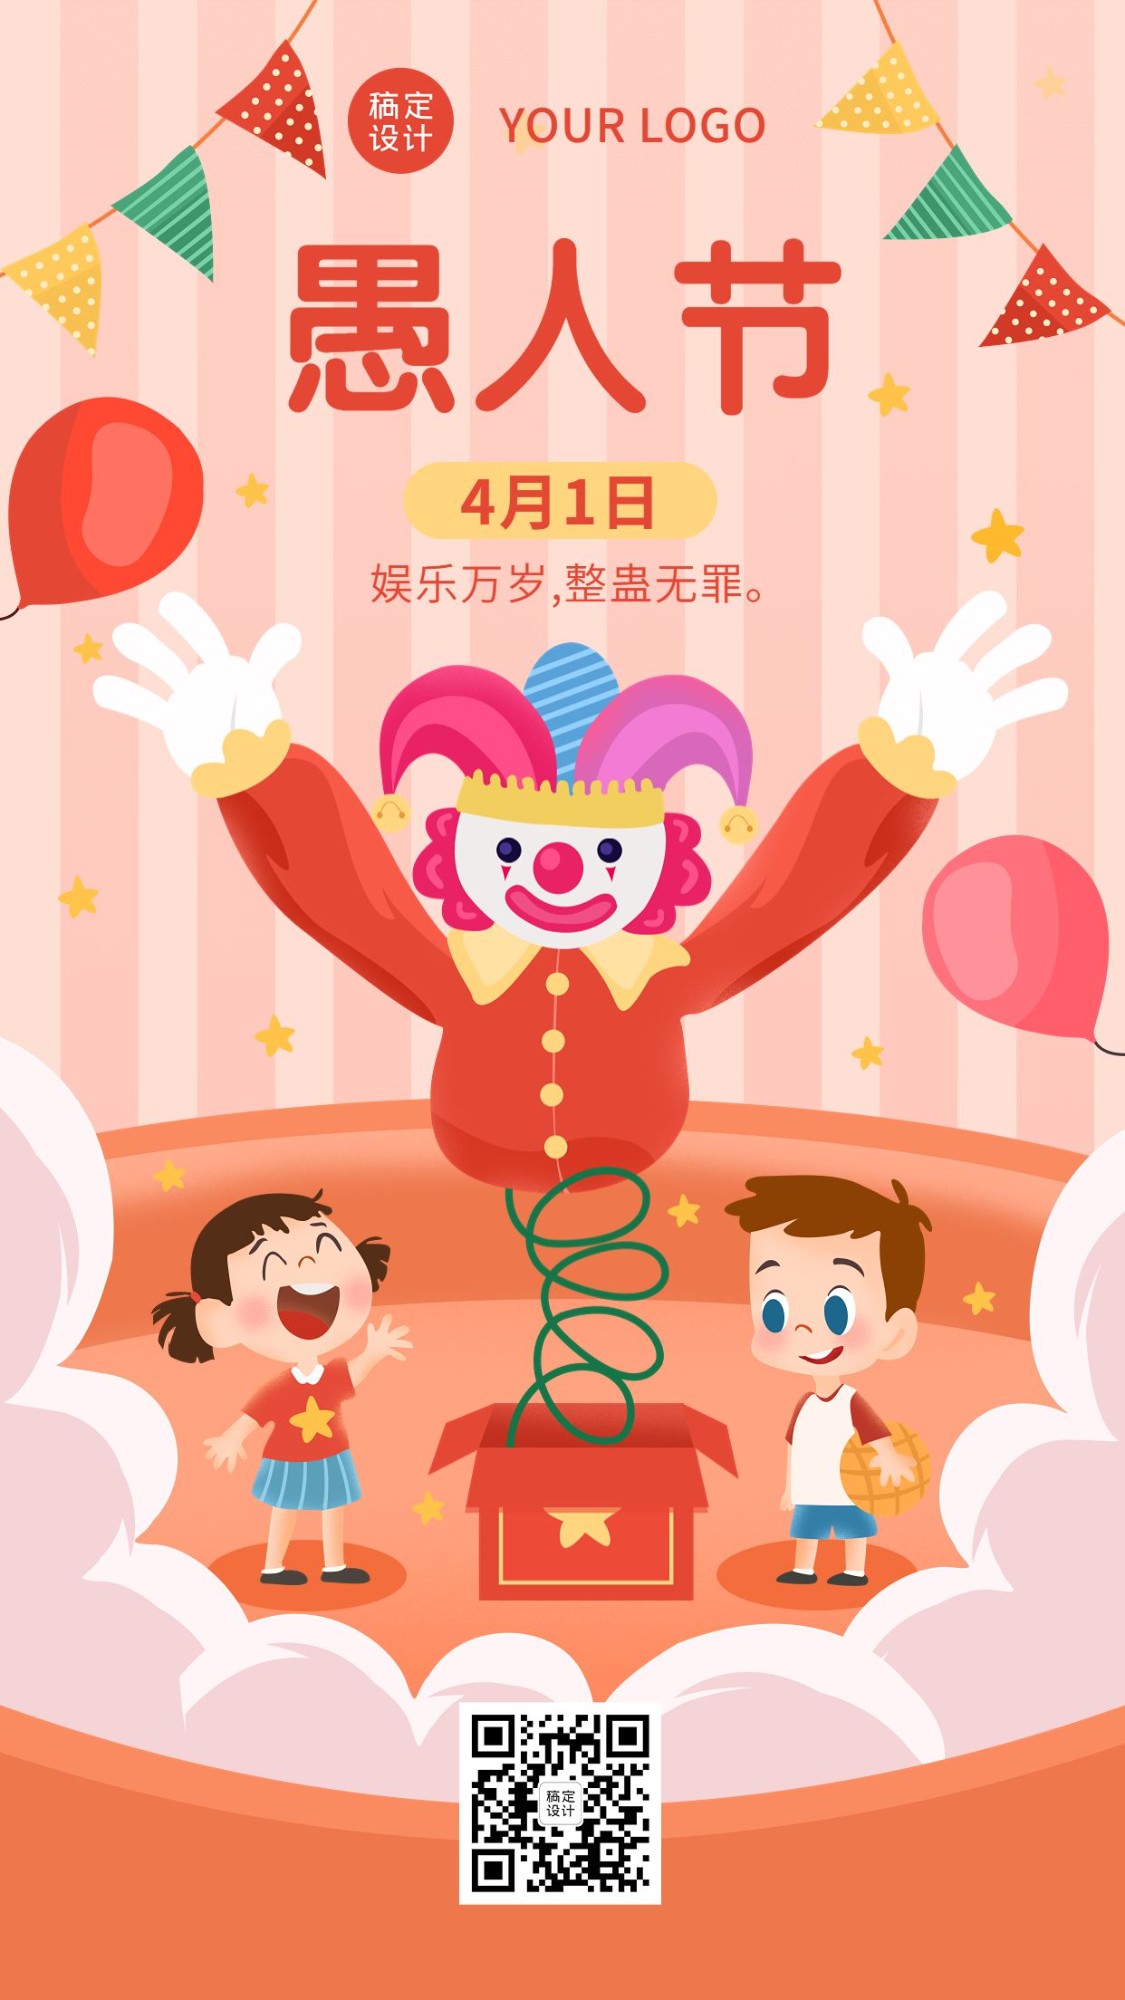 愚人节节日祝福气球小丑手机海报_图片模板素材-稿定设计